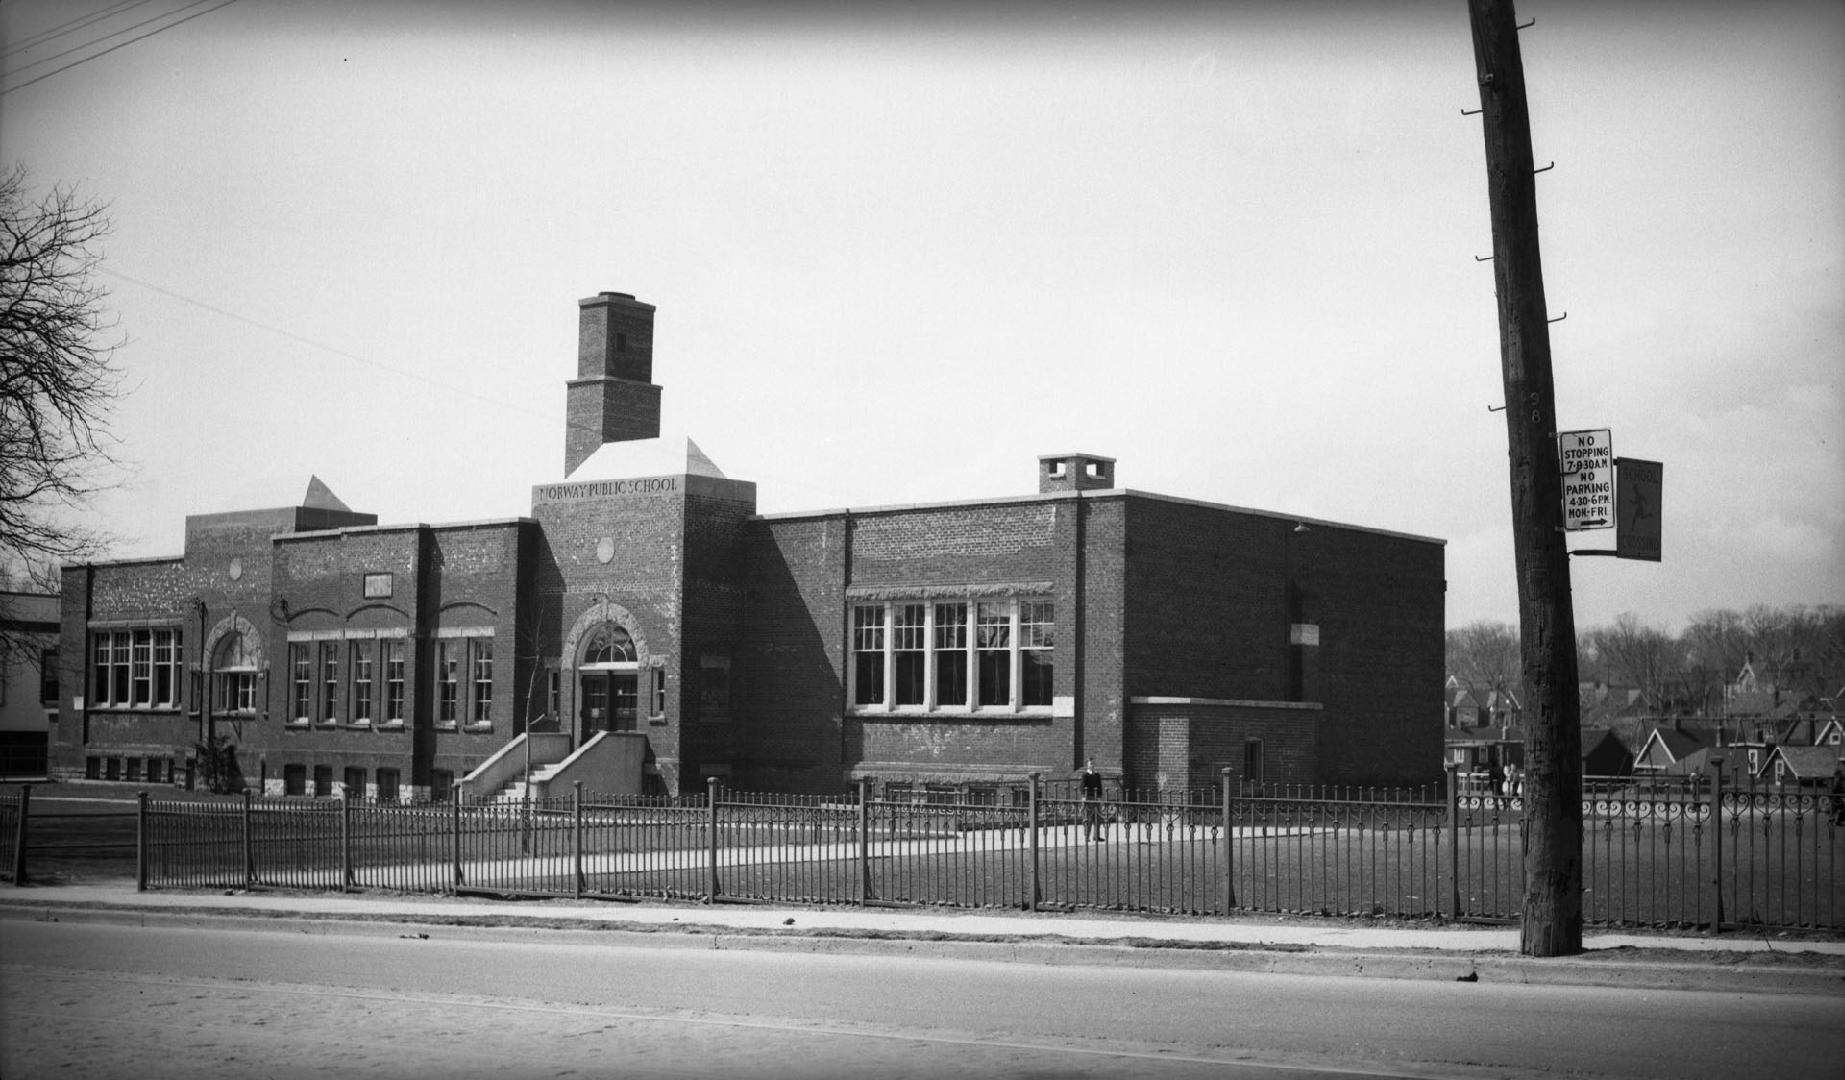 Norway Public School, Kingston Road